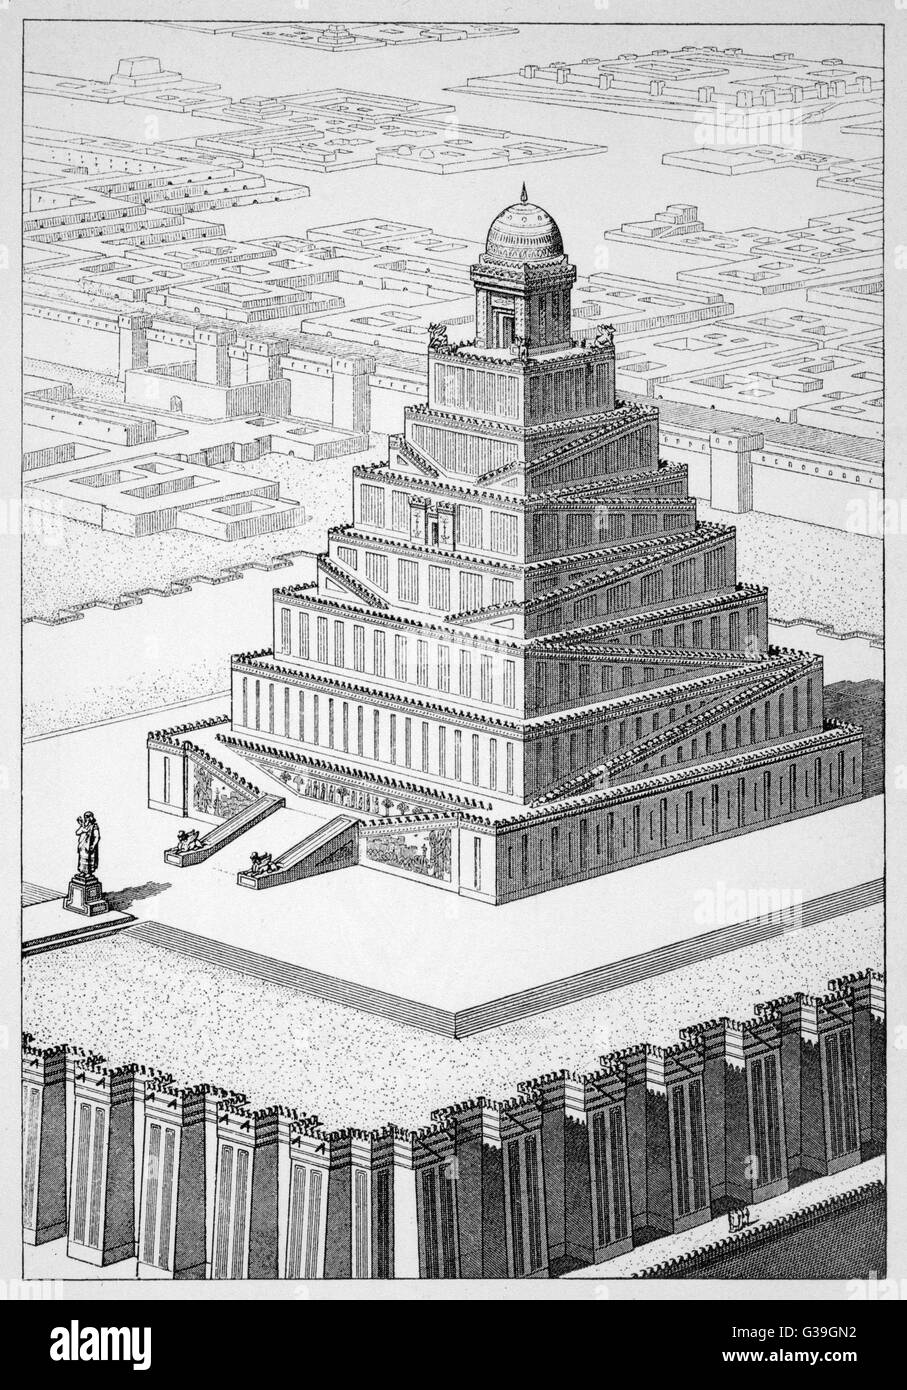 Die Zikkurat von Marduk oder "Etemenanki" (die sagenumwobenen "Tower of Babel") tapfer durch Chipiez hier rekonstruiert. Aufgrund der Gewinnung ist die Seite jetzt ein großes Loch.     Datum: 1902 Stockfoto